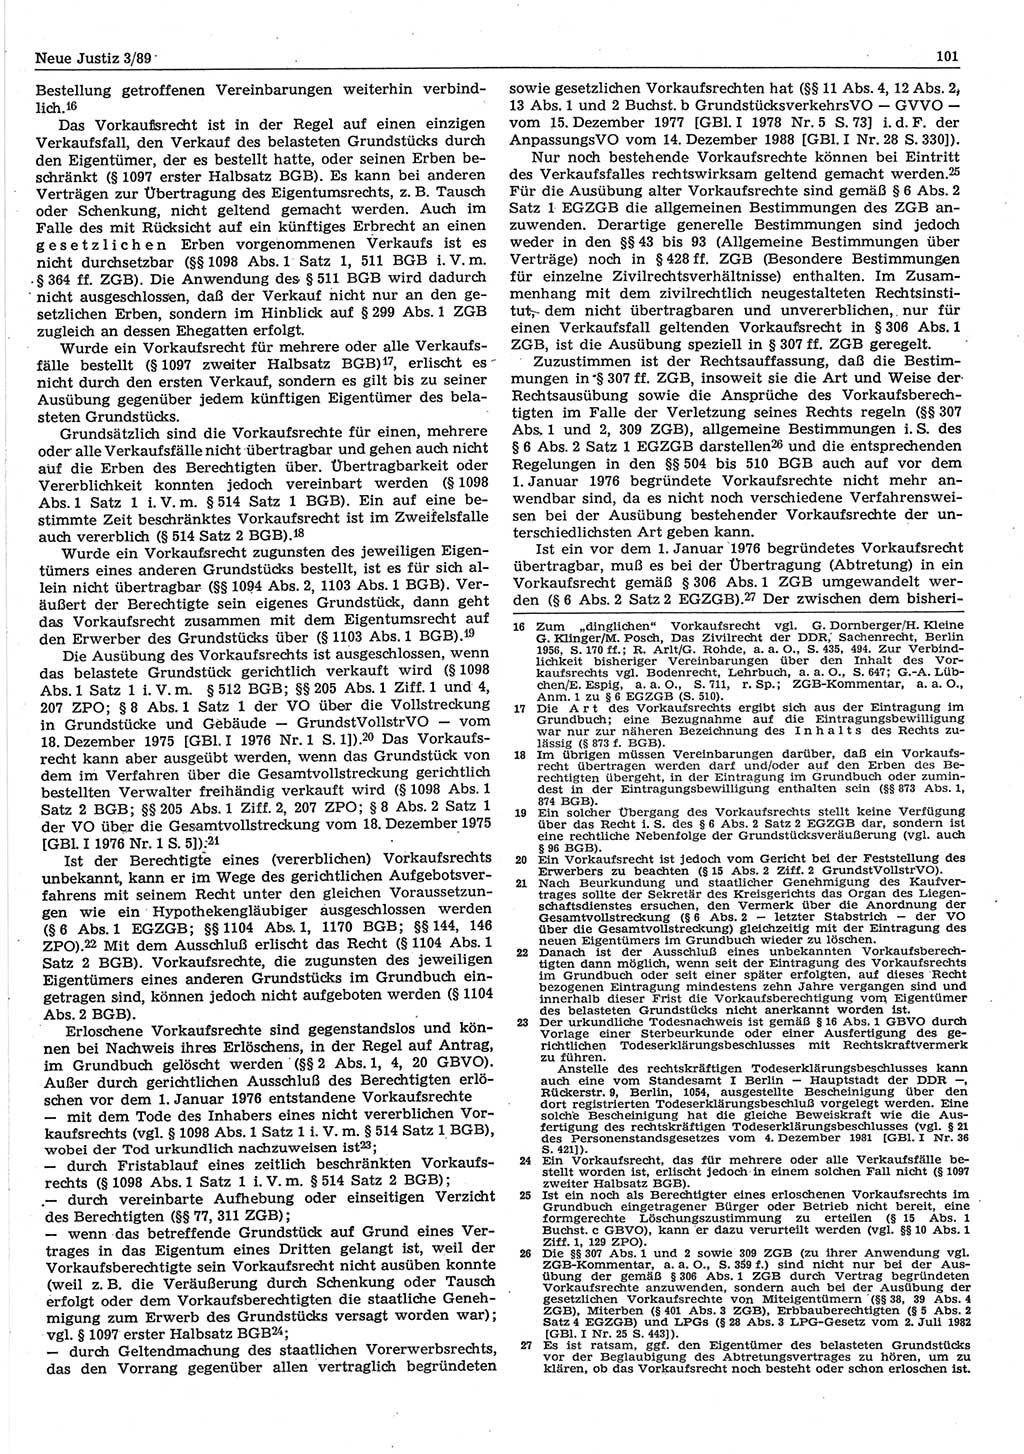 Neue Justiz (NJ), Zeitschrift für sozialistisches Recht und Gesetzlichkeit [Deutsche Demokratische Republik (DDR)], 43. Jahrgang 1989, Seite 101 (NJ DDR 1989, S. 101)